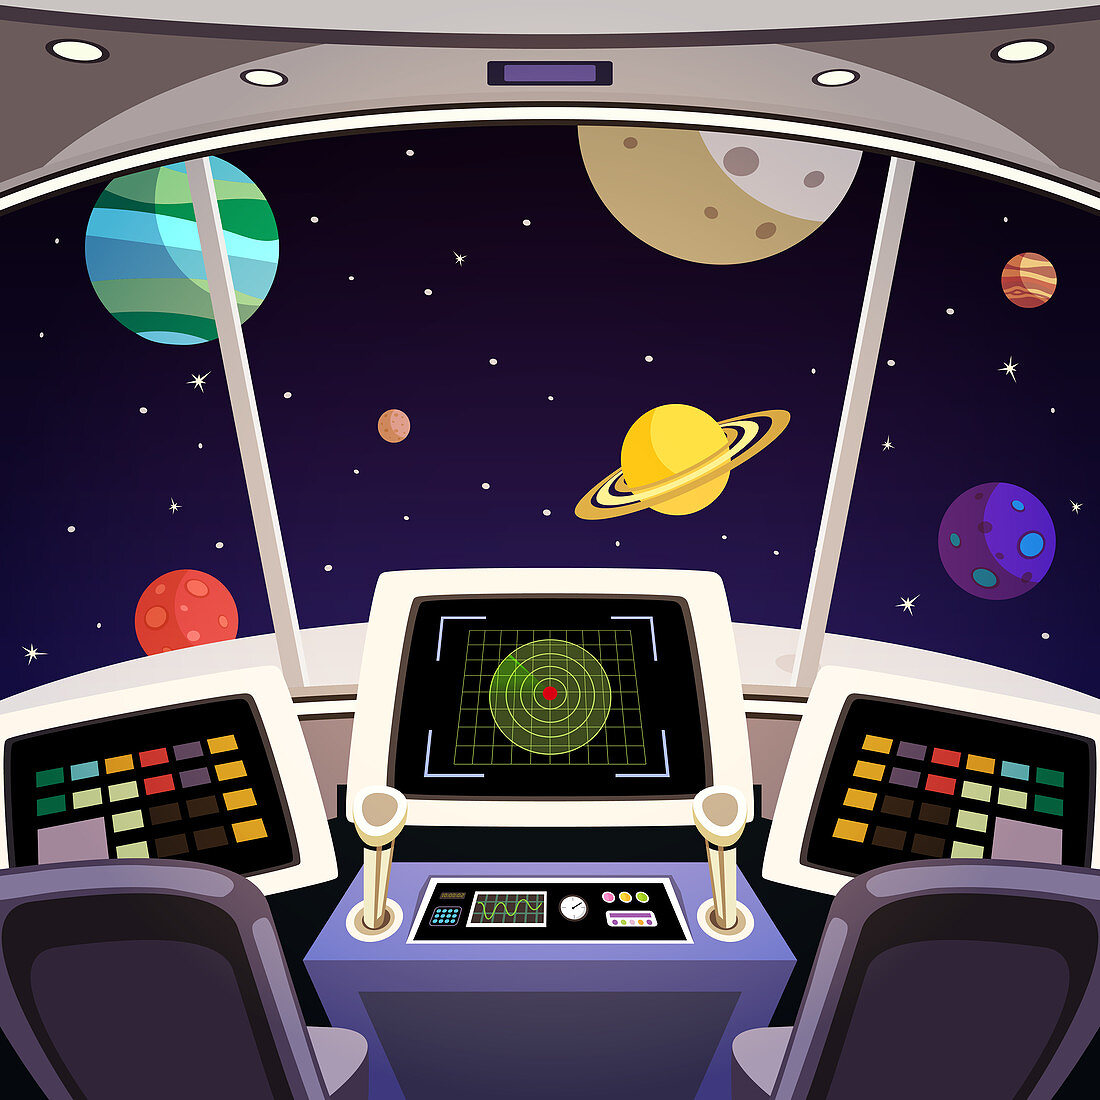 Spaceship bridge, illustration